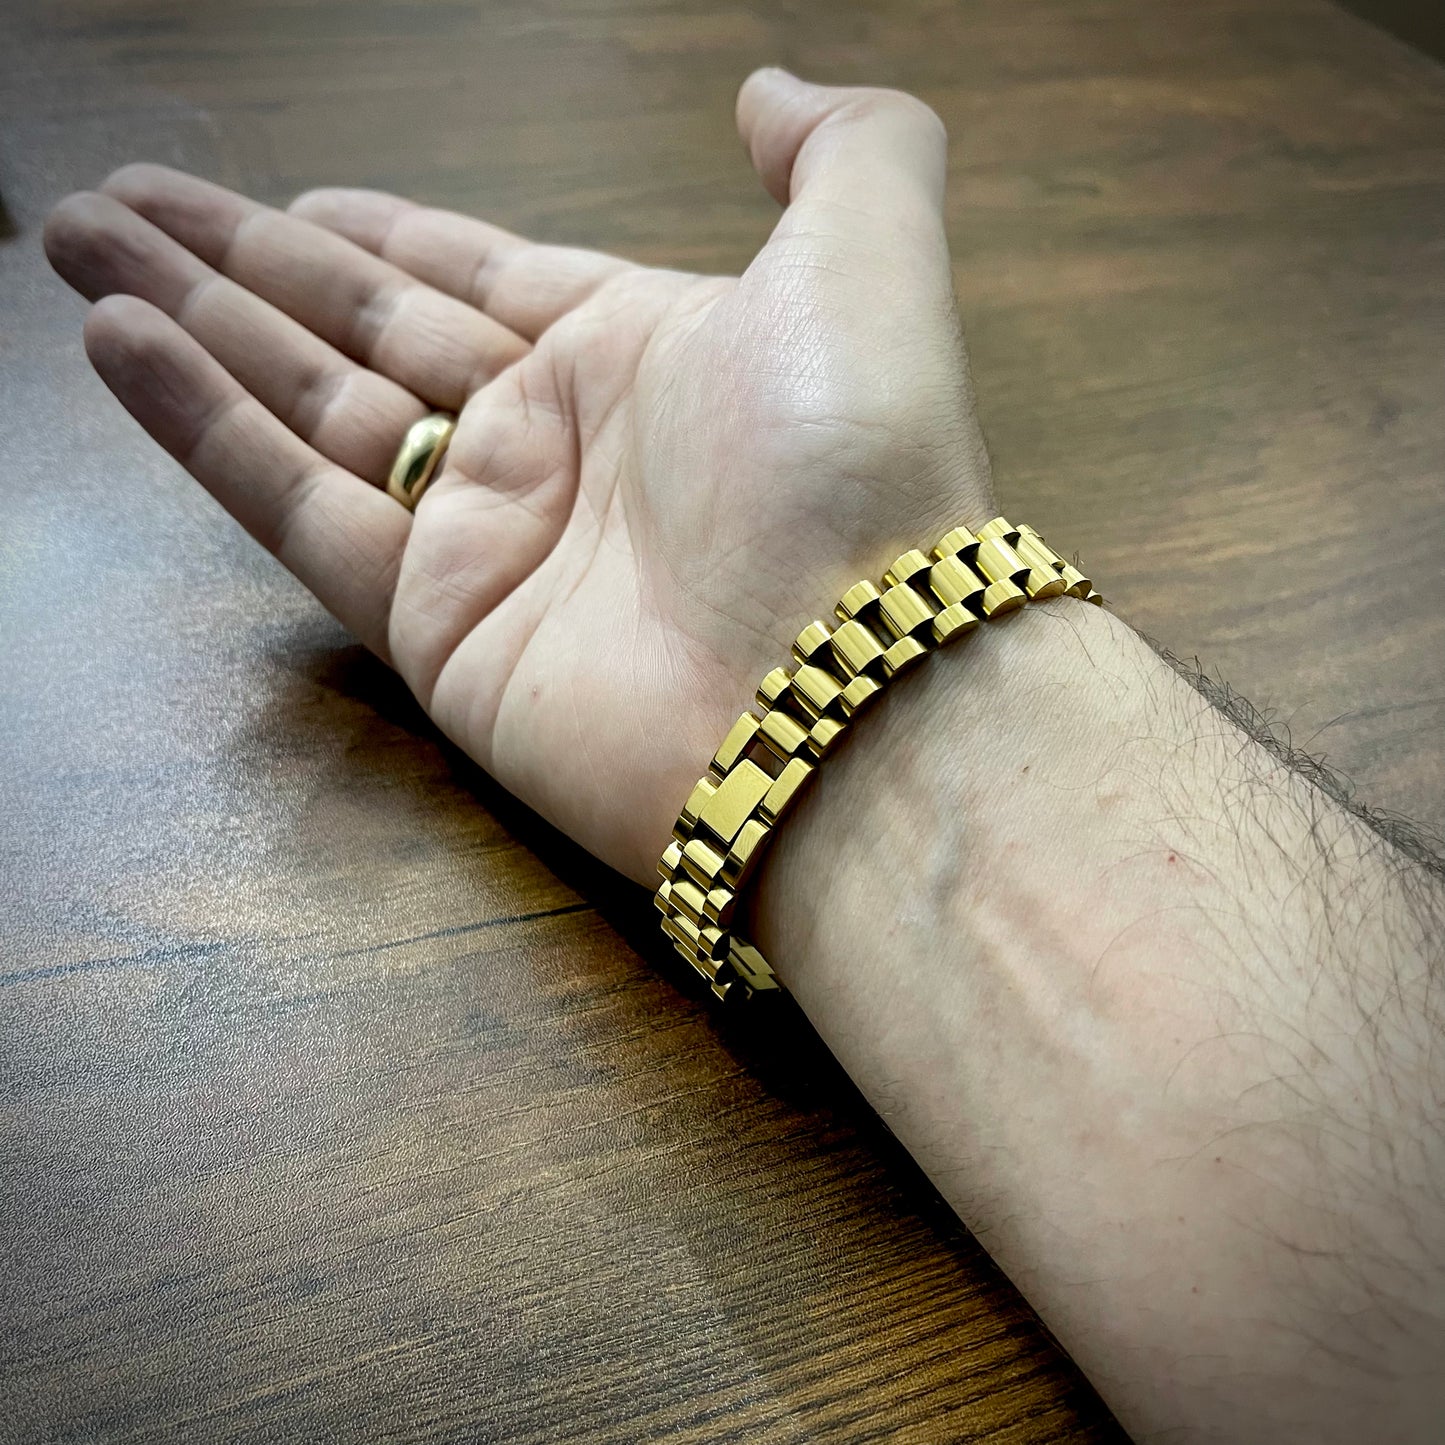 golden crown rolex jubilee bracelet for men online in Pakistan